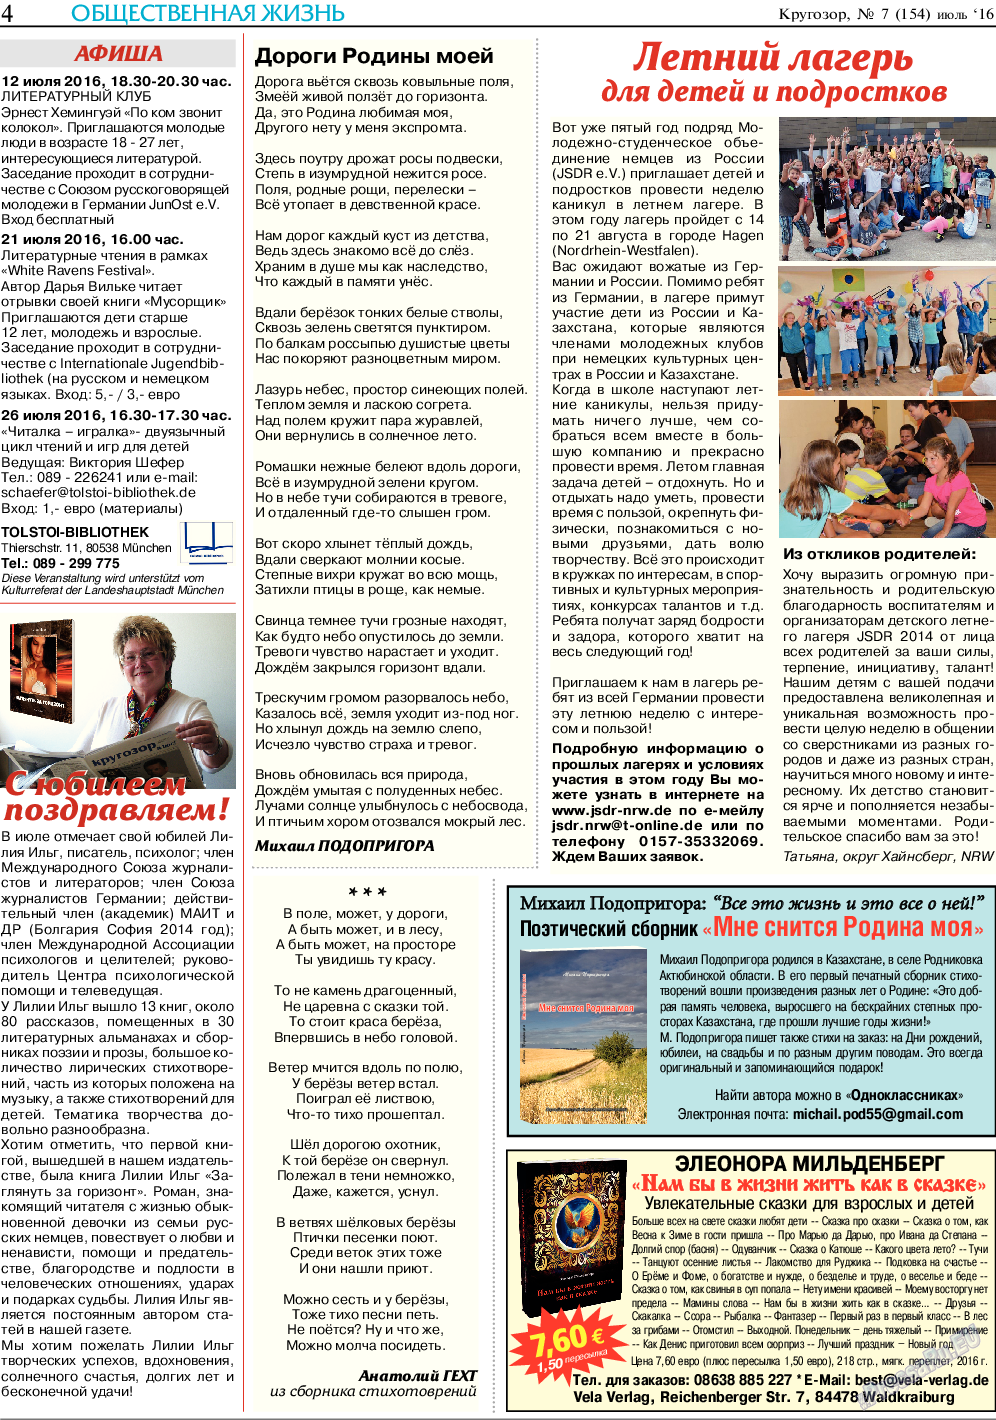 Кругозор (газета). 2016 год, номер 7, стр. 4